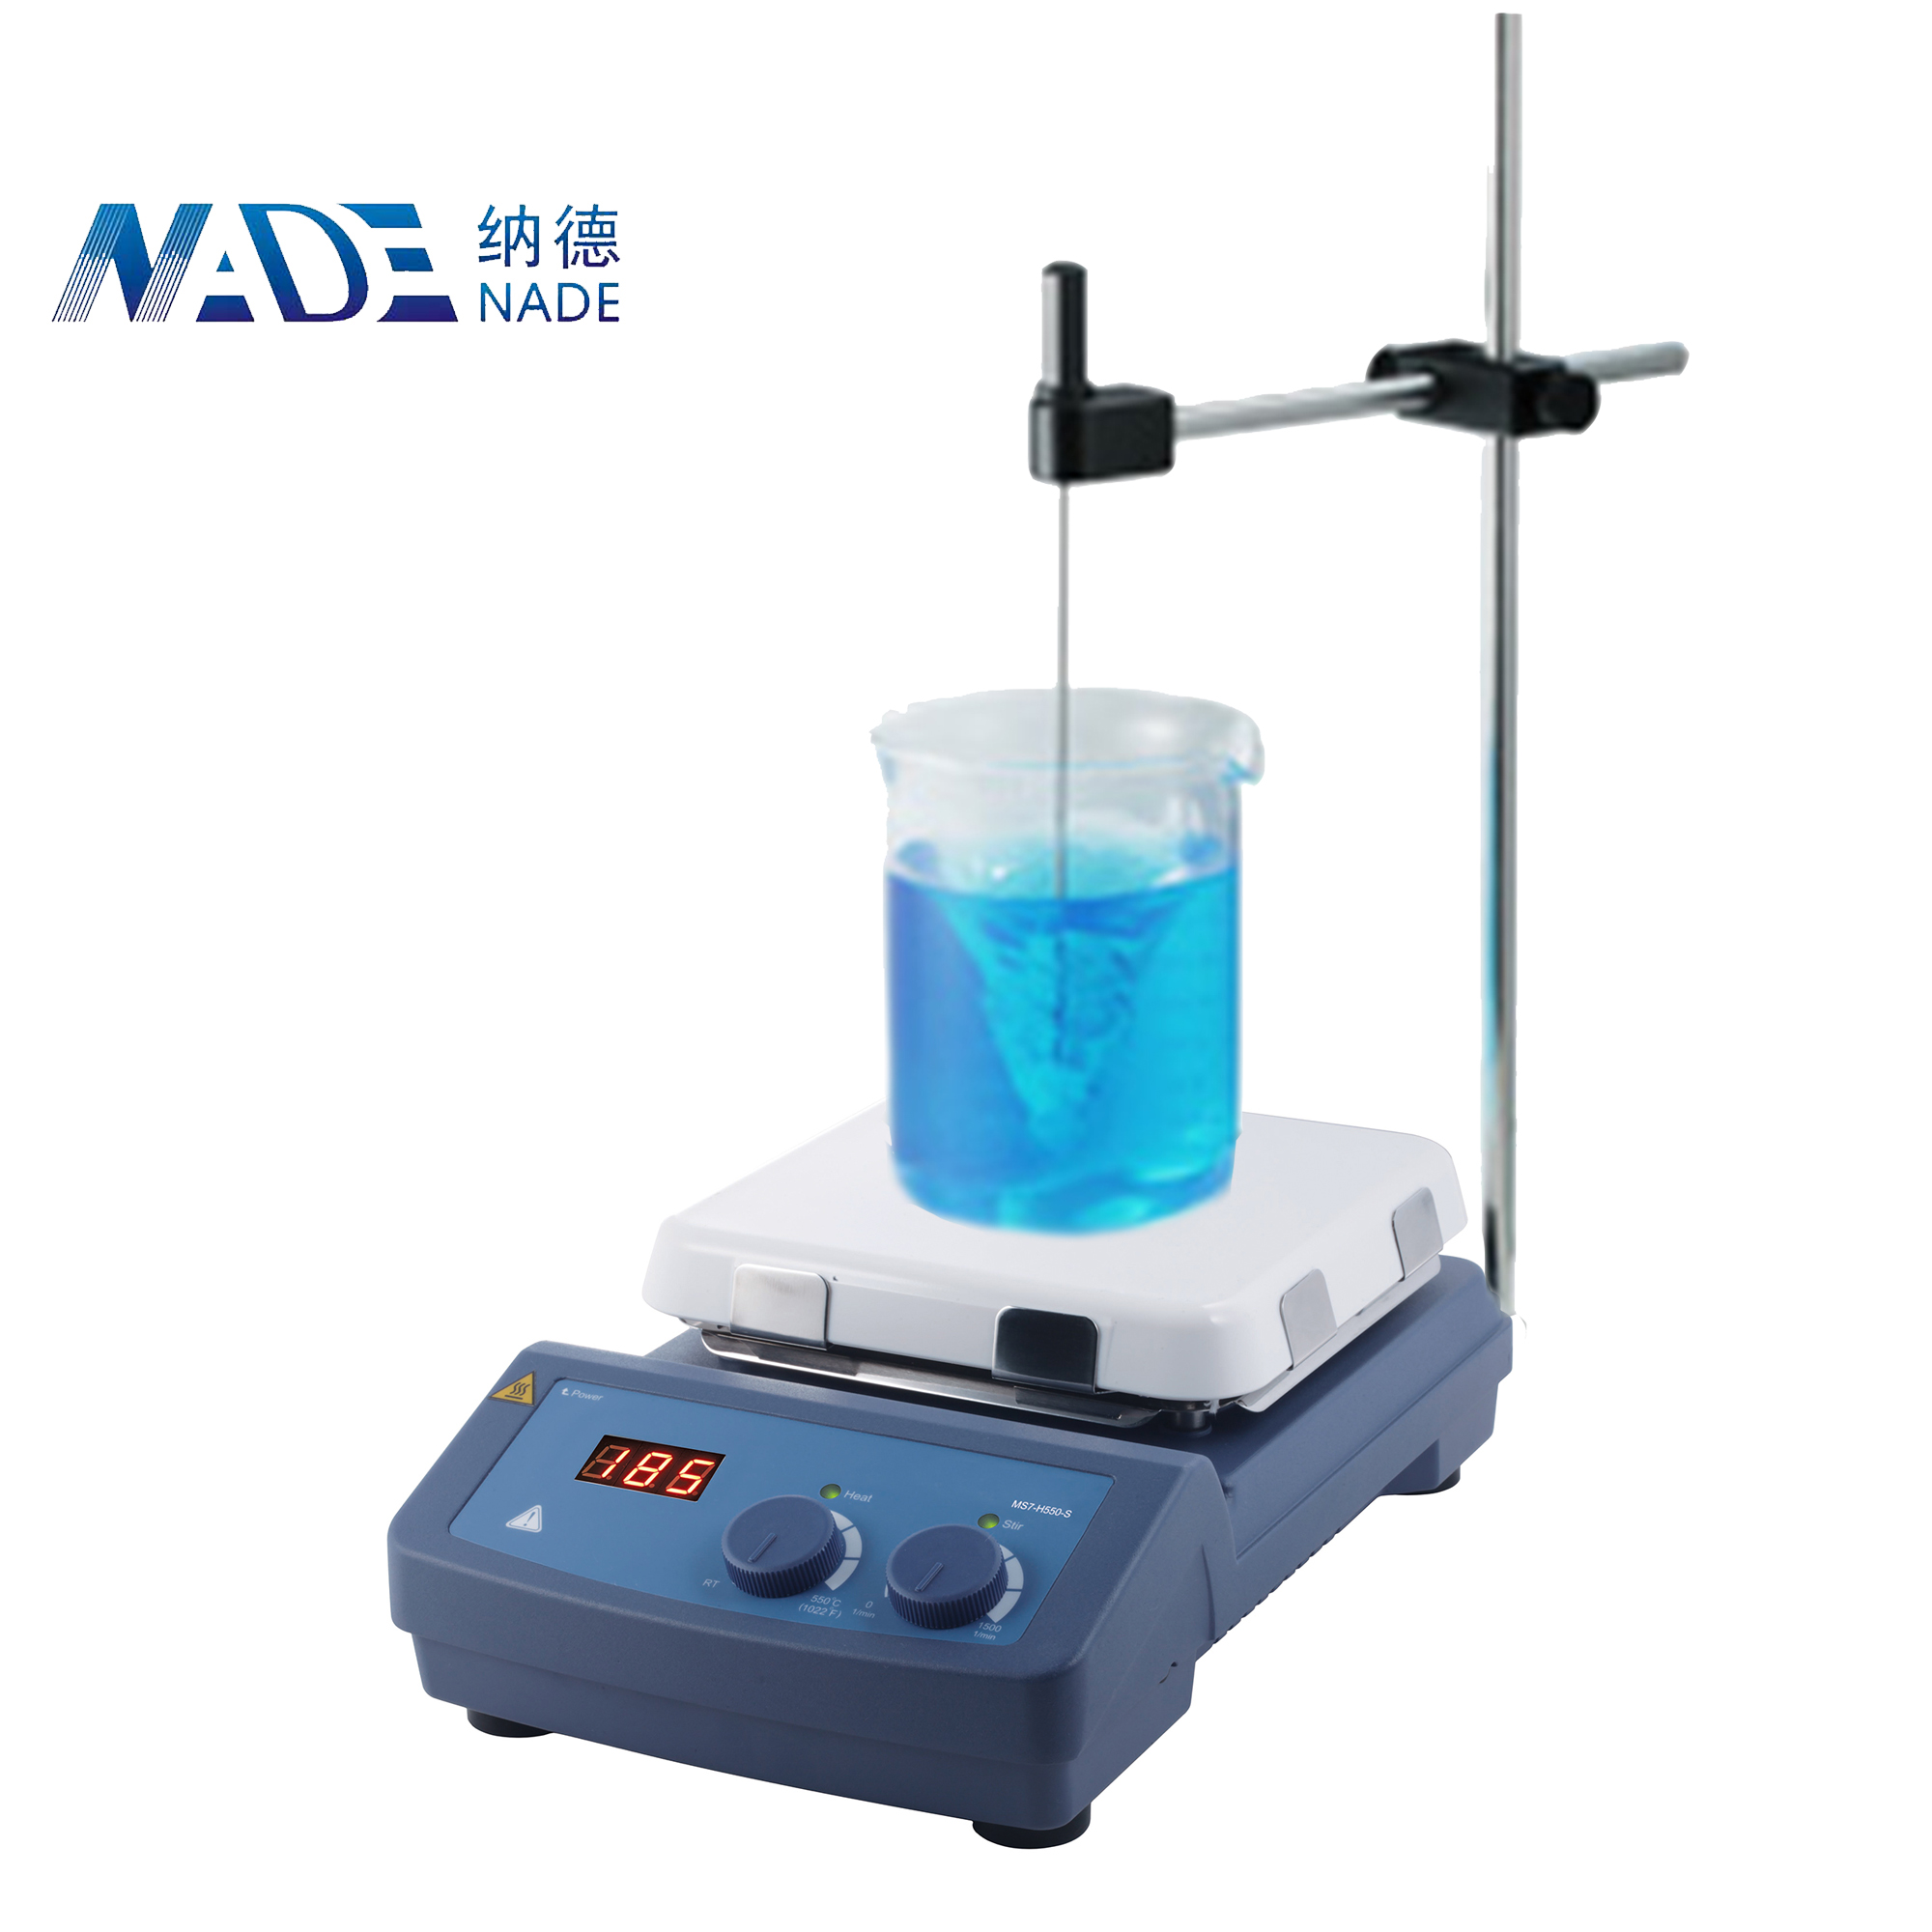 NADE Laboratory 550C 10L LED Display 7'' Square Safe Hotplate Magnetic Stirrer with PT1000 temperature sensor